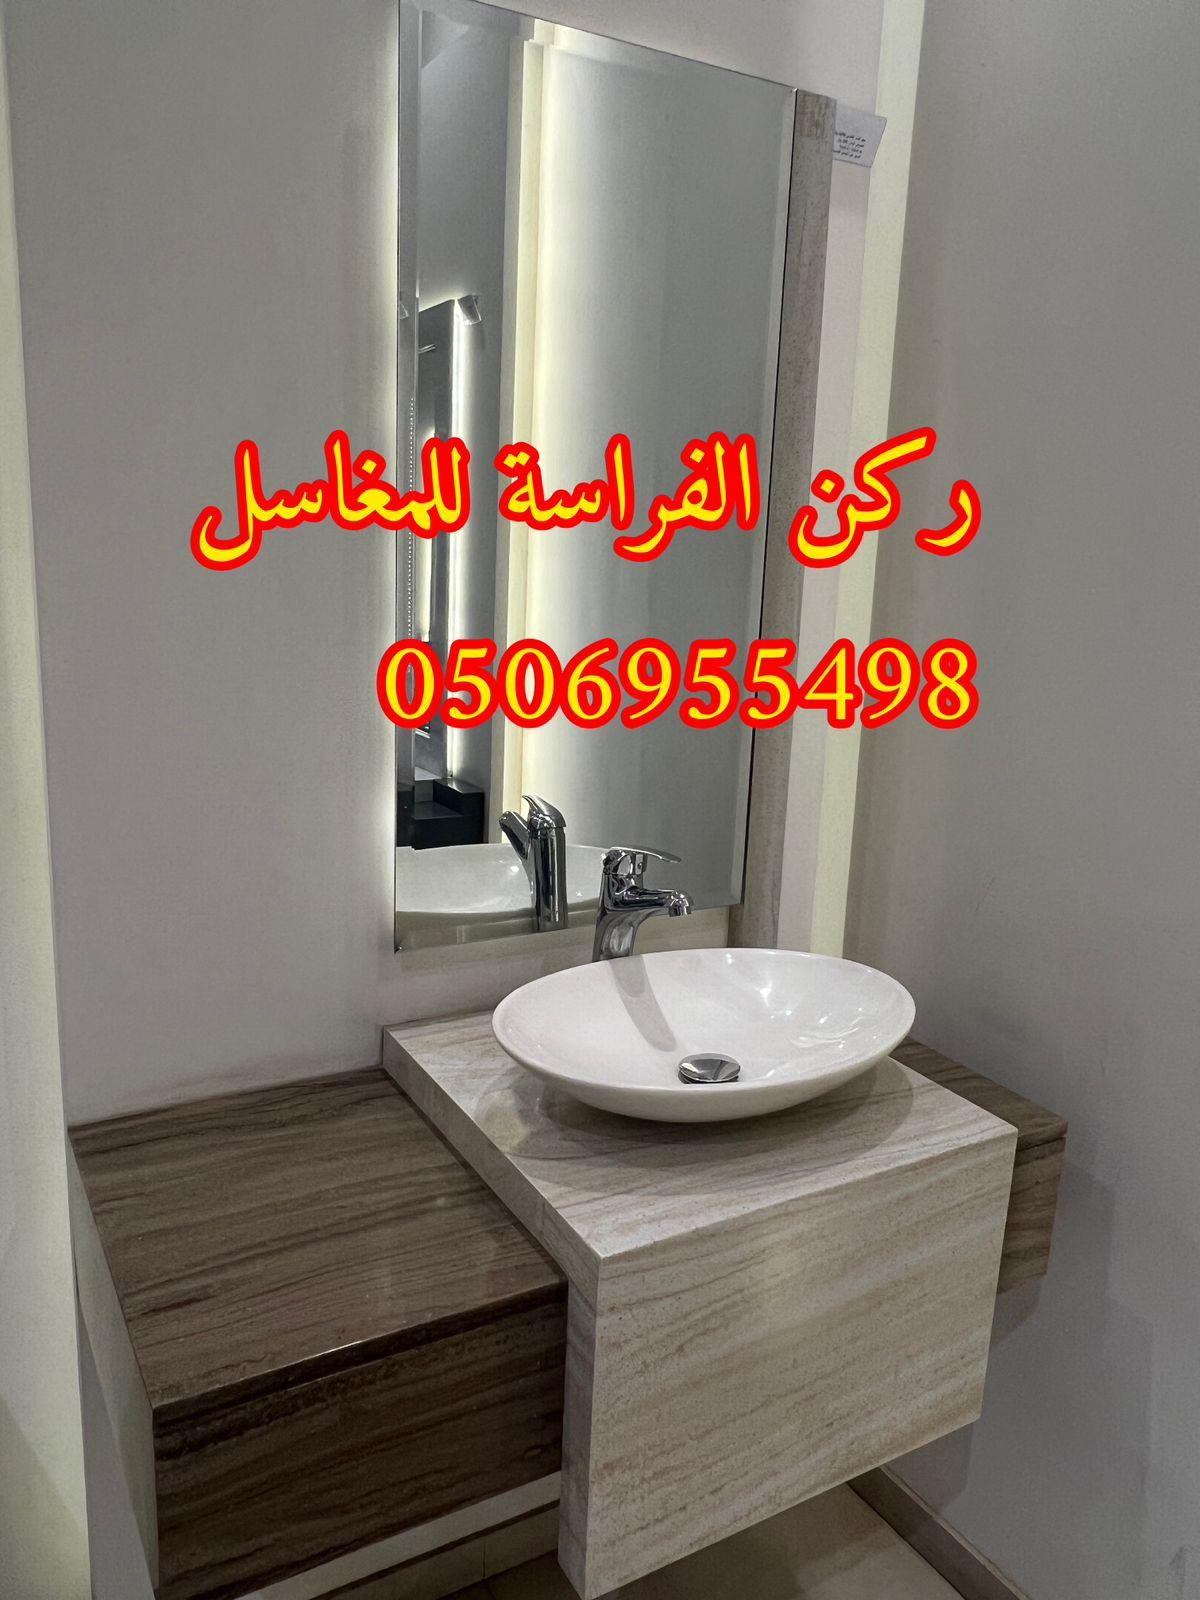 الرياض - ديكورات مغاسل حمامات رخام في الرياض,0506955498 362396023